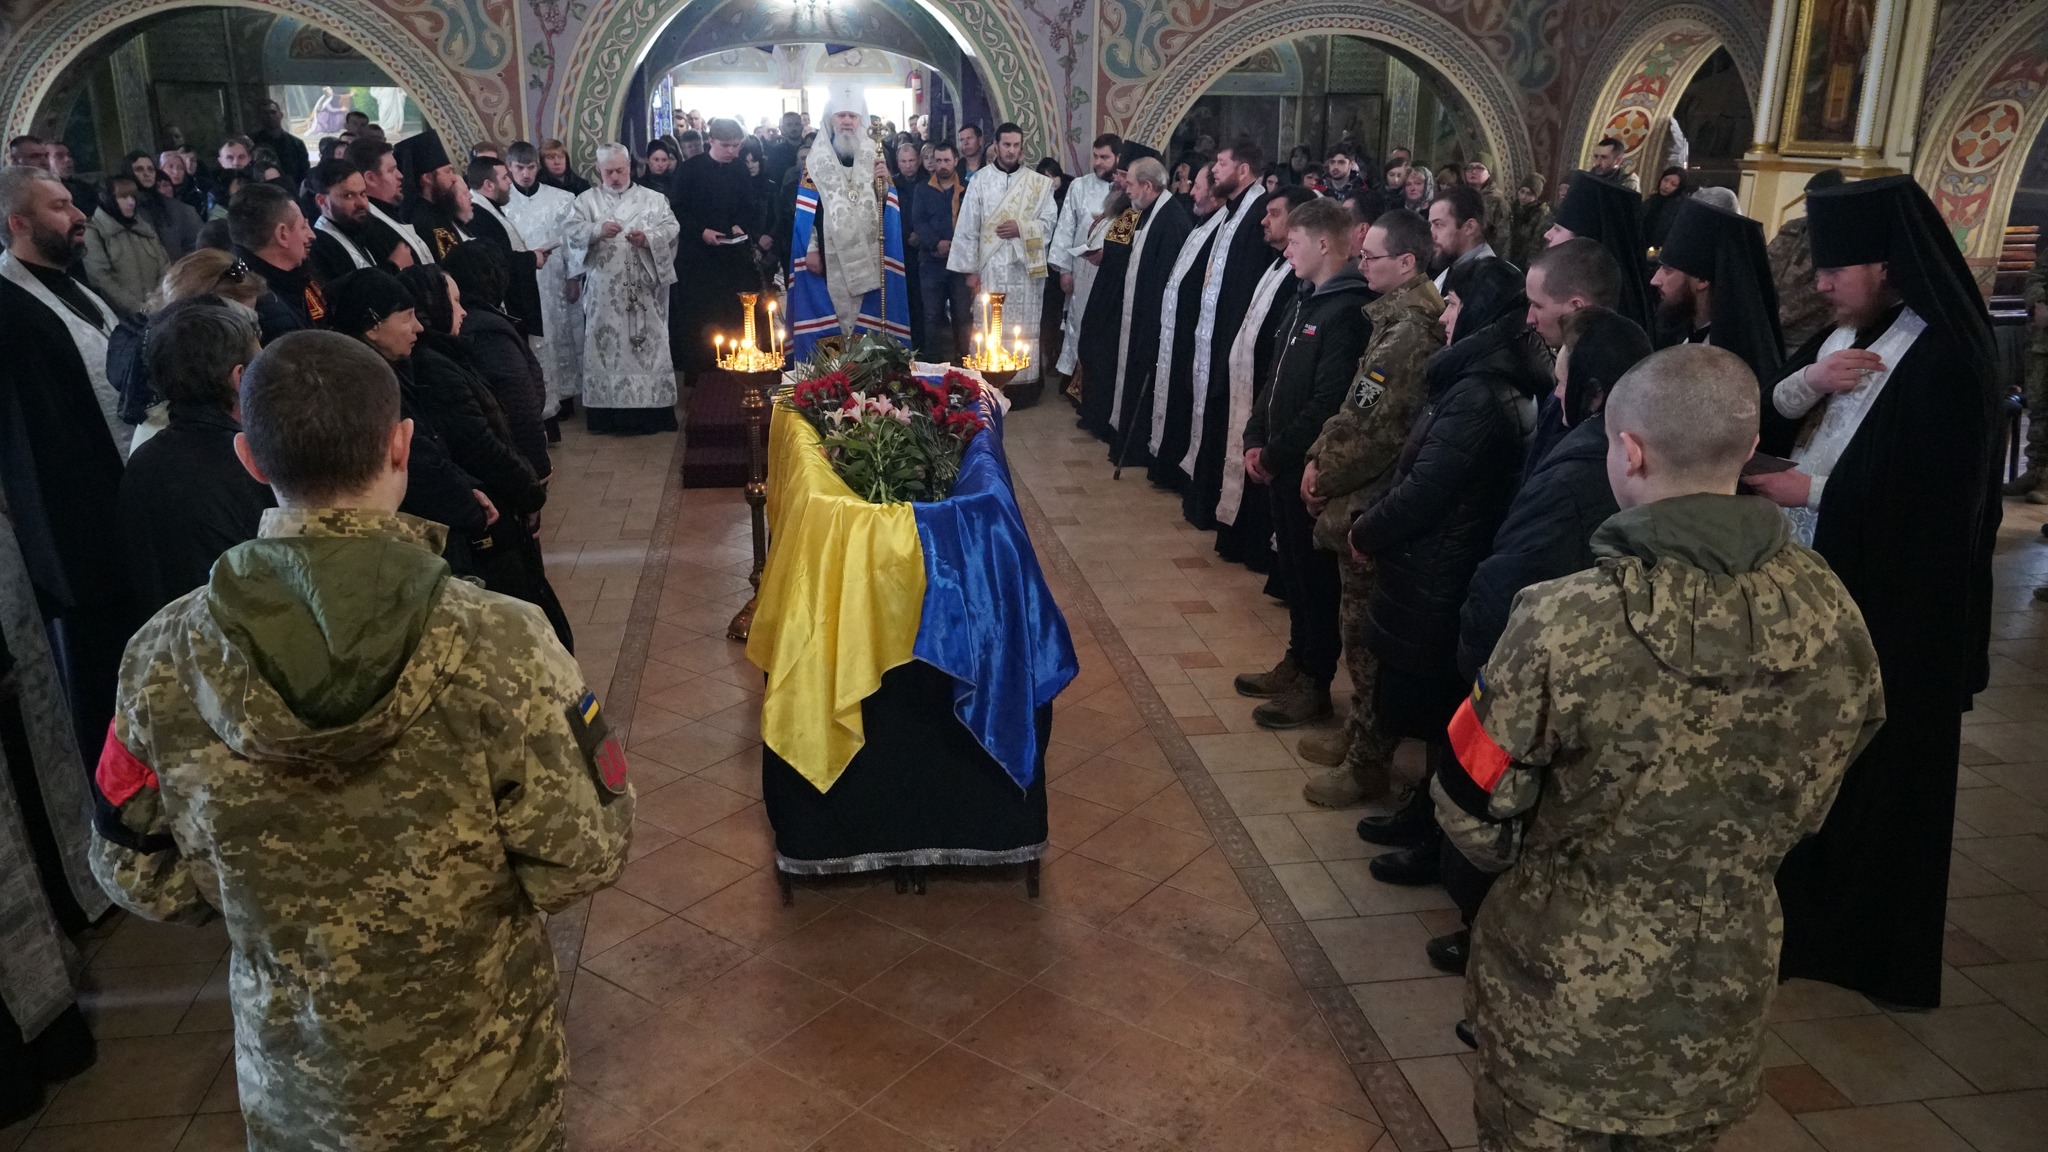 Сьогодні в  Мукачеві поховали ще одного Героя, 45-річного бійця 128-ої окремої гірсько-штурмової бригади Сергія Бідзілю.

